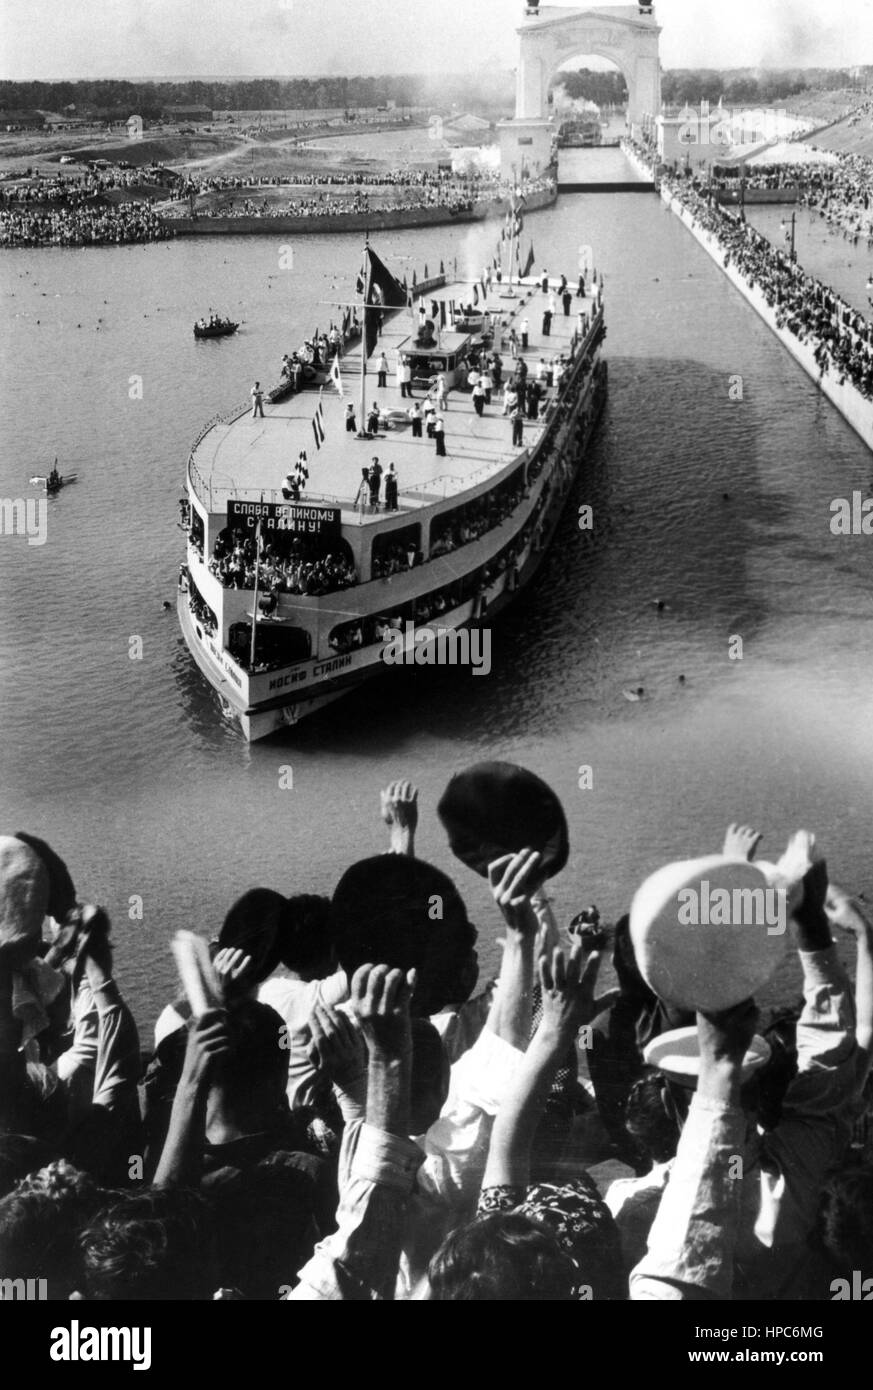 Se réjouir les gens accueillent le navire 'Joseph Staline' à l'ouverture de la canal Volga-Don le 27 juillet 1952 près de Stalingrad (près de Volgograd). Photo : Yevgeny Khaldei | conditions dans le monde entier Banque D'Images